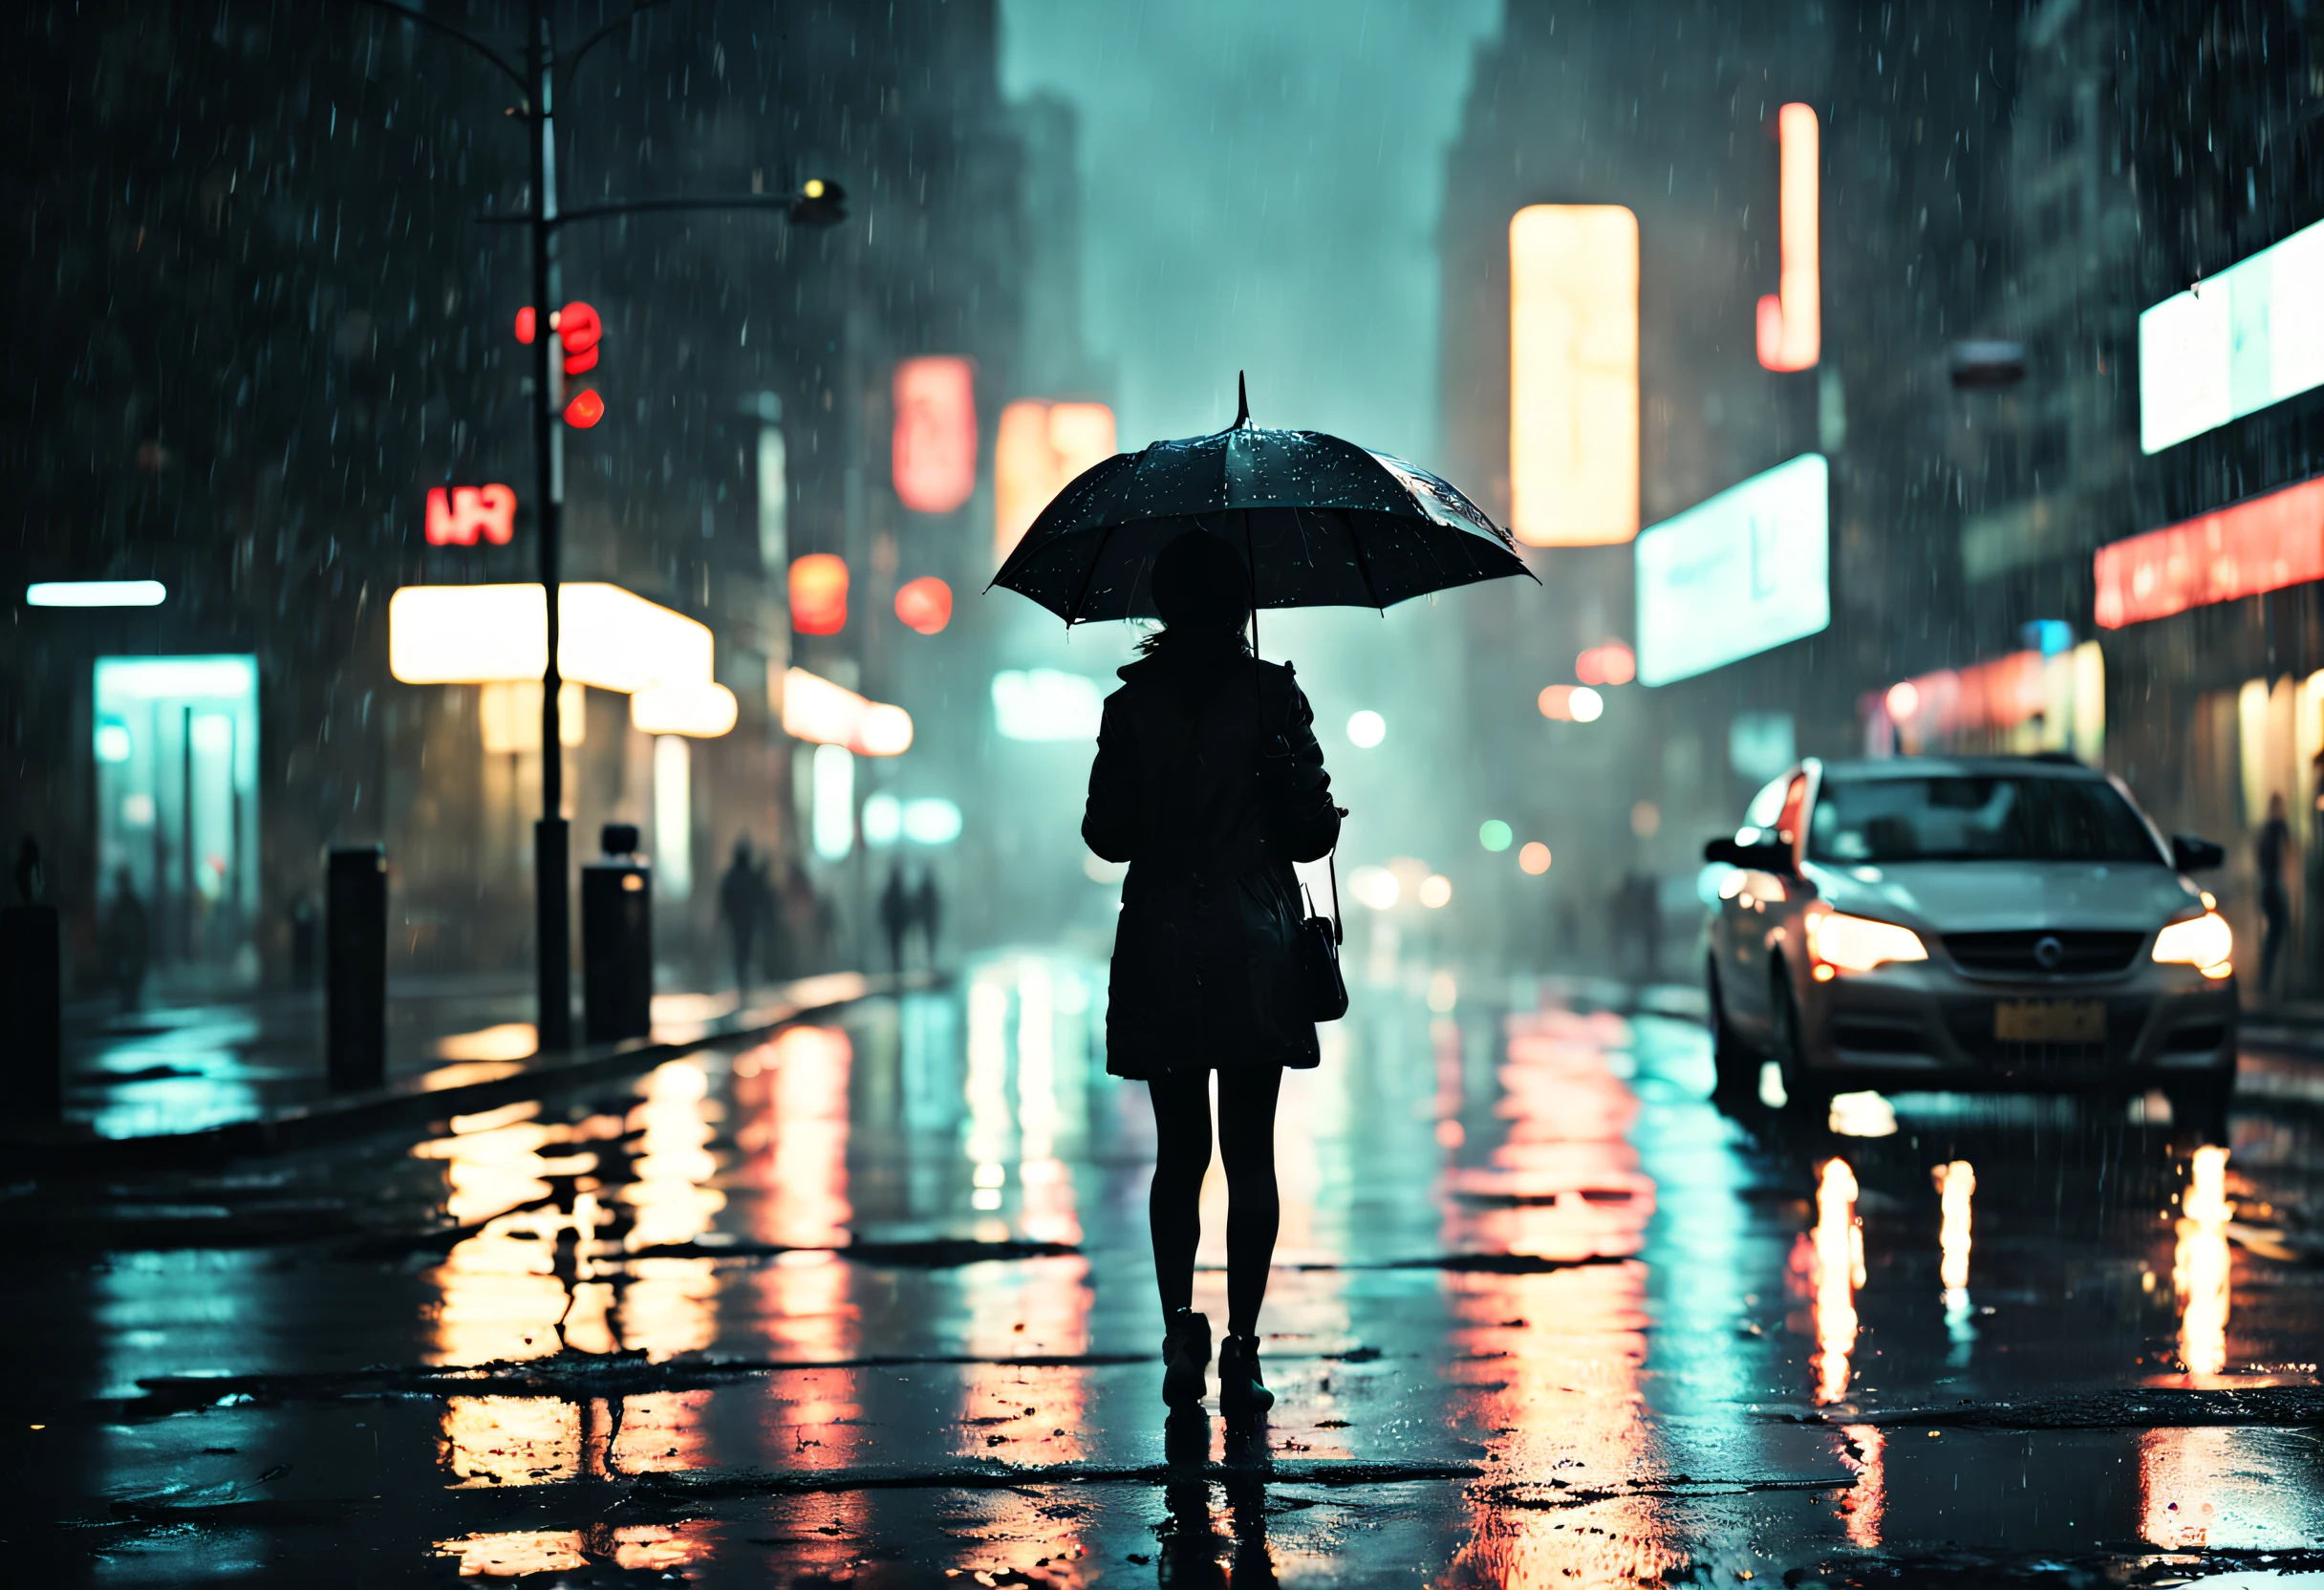 薄暗い道で滴る傘の下に立つ女の子,濡れた舗道で光る雨粒,街灯から発せられる暖かい光,水たまりのネオンサインの反射,傘を持って急いでいる人々, 雨粒が傘に当たる音, 地面に散らばった濡れた葉, 霧のかかった雰囲気, 街灯で強調された少女のシルエット, rainy 都市景観 at night, 映画的でムーディーな照明, 光と闇の劇的なコントラスト, 神秘と孤独の感覚, 濡れて光沢のあるテクスチャ, クールで彩度の低いカラーパレット, 印象派で夢のようなアートスタイル. (最高品質, 4K, 超詳細, 現実的:1.37), 雨の夜, 都市景観, 映画照明, 濡れた質感, 陰鬱な雰囲気, 印象派のアートスタイル